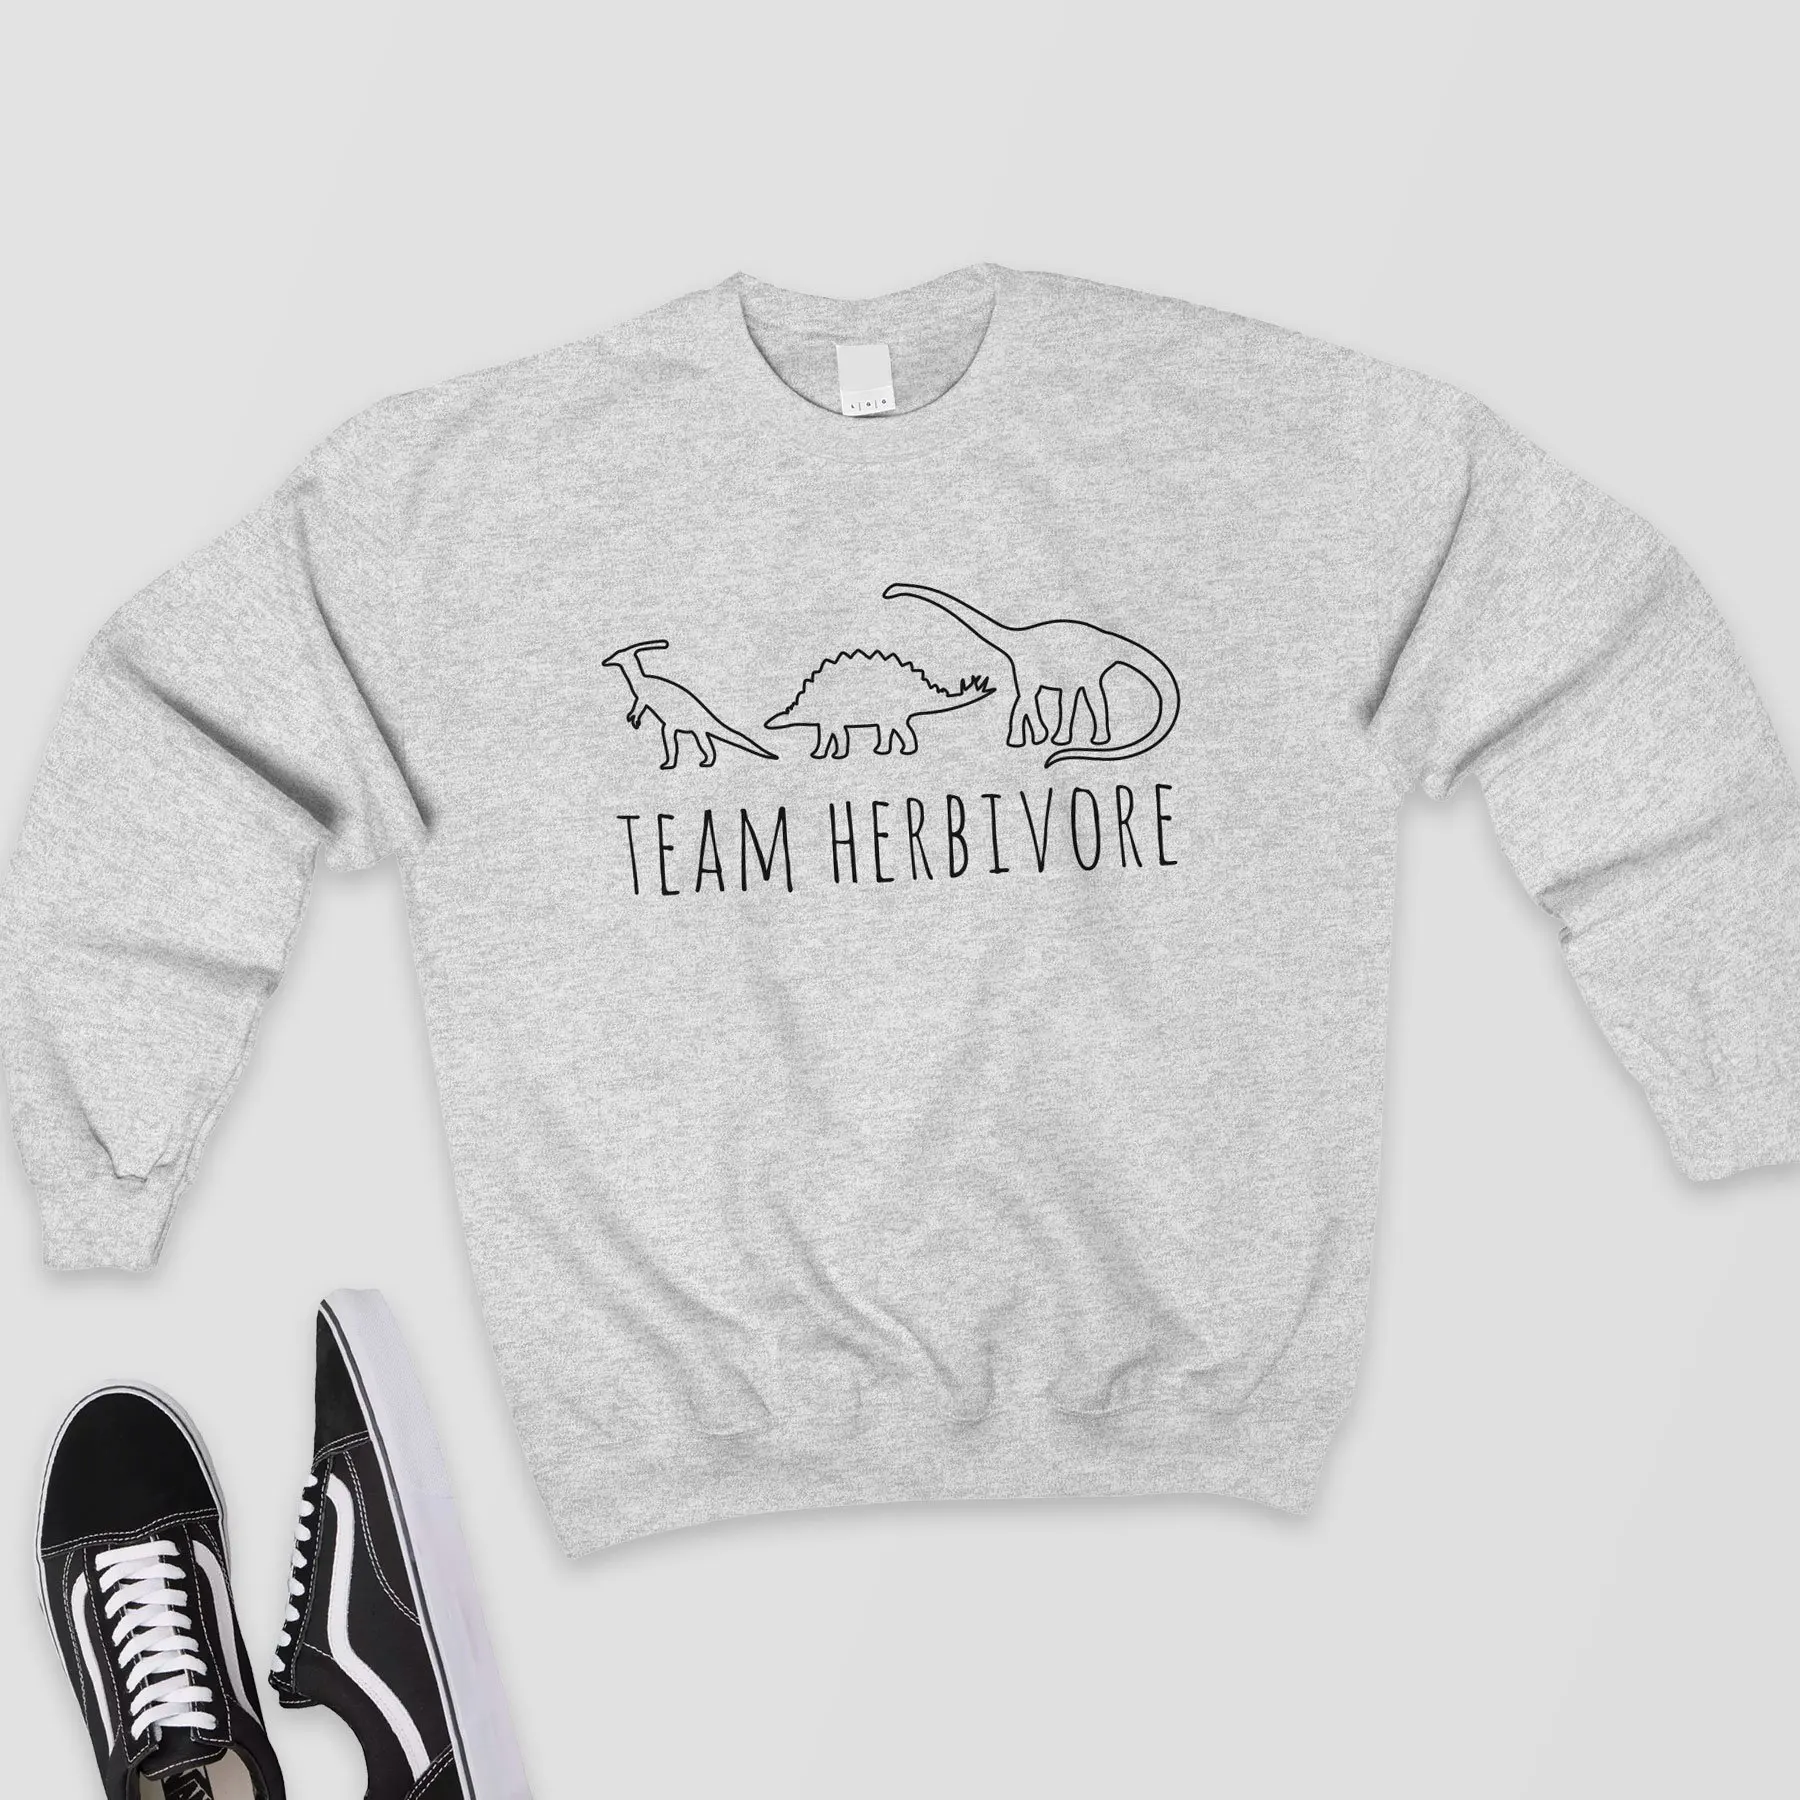 Team Herbivore, толстовка, женские Графические Топы, Harajuku, джемпер, веганская рубашка, Вегетарианская рубашка с динозаврами, толстовки, готические пуловеры